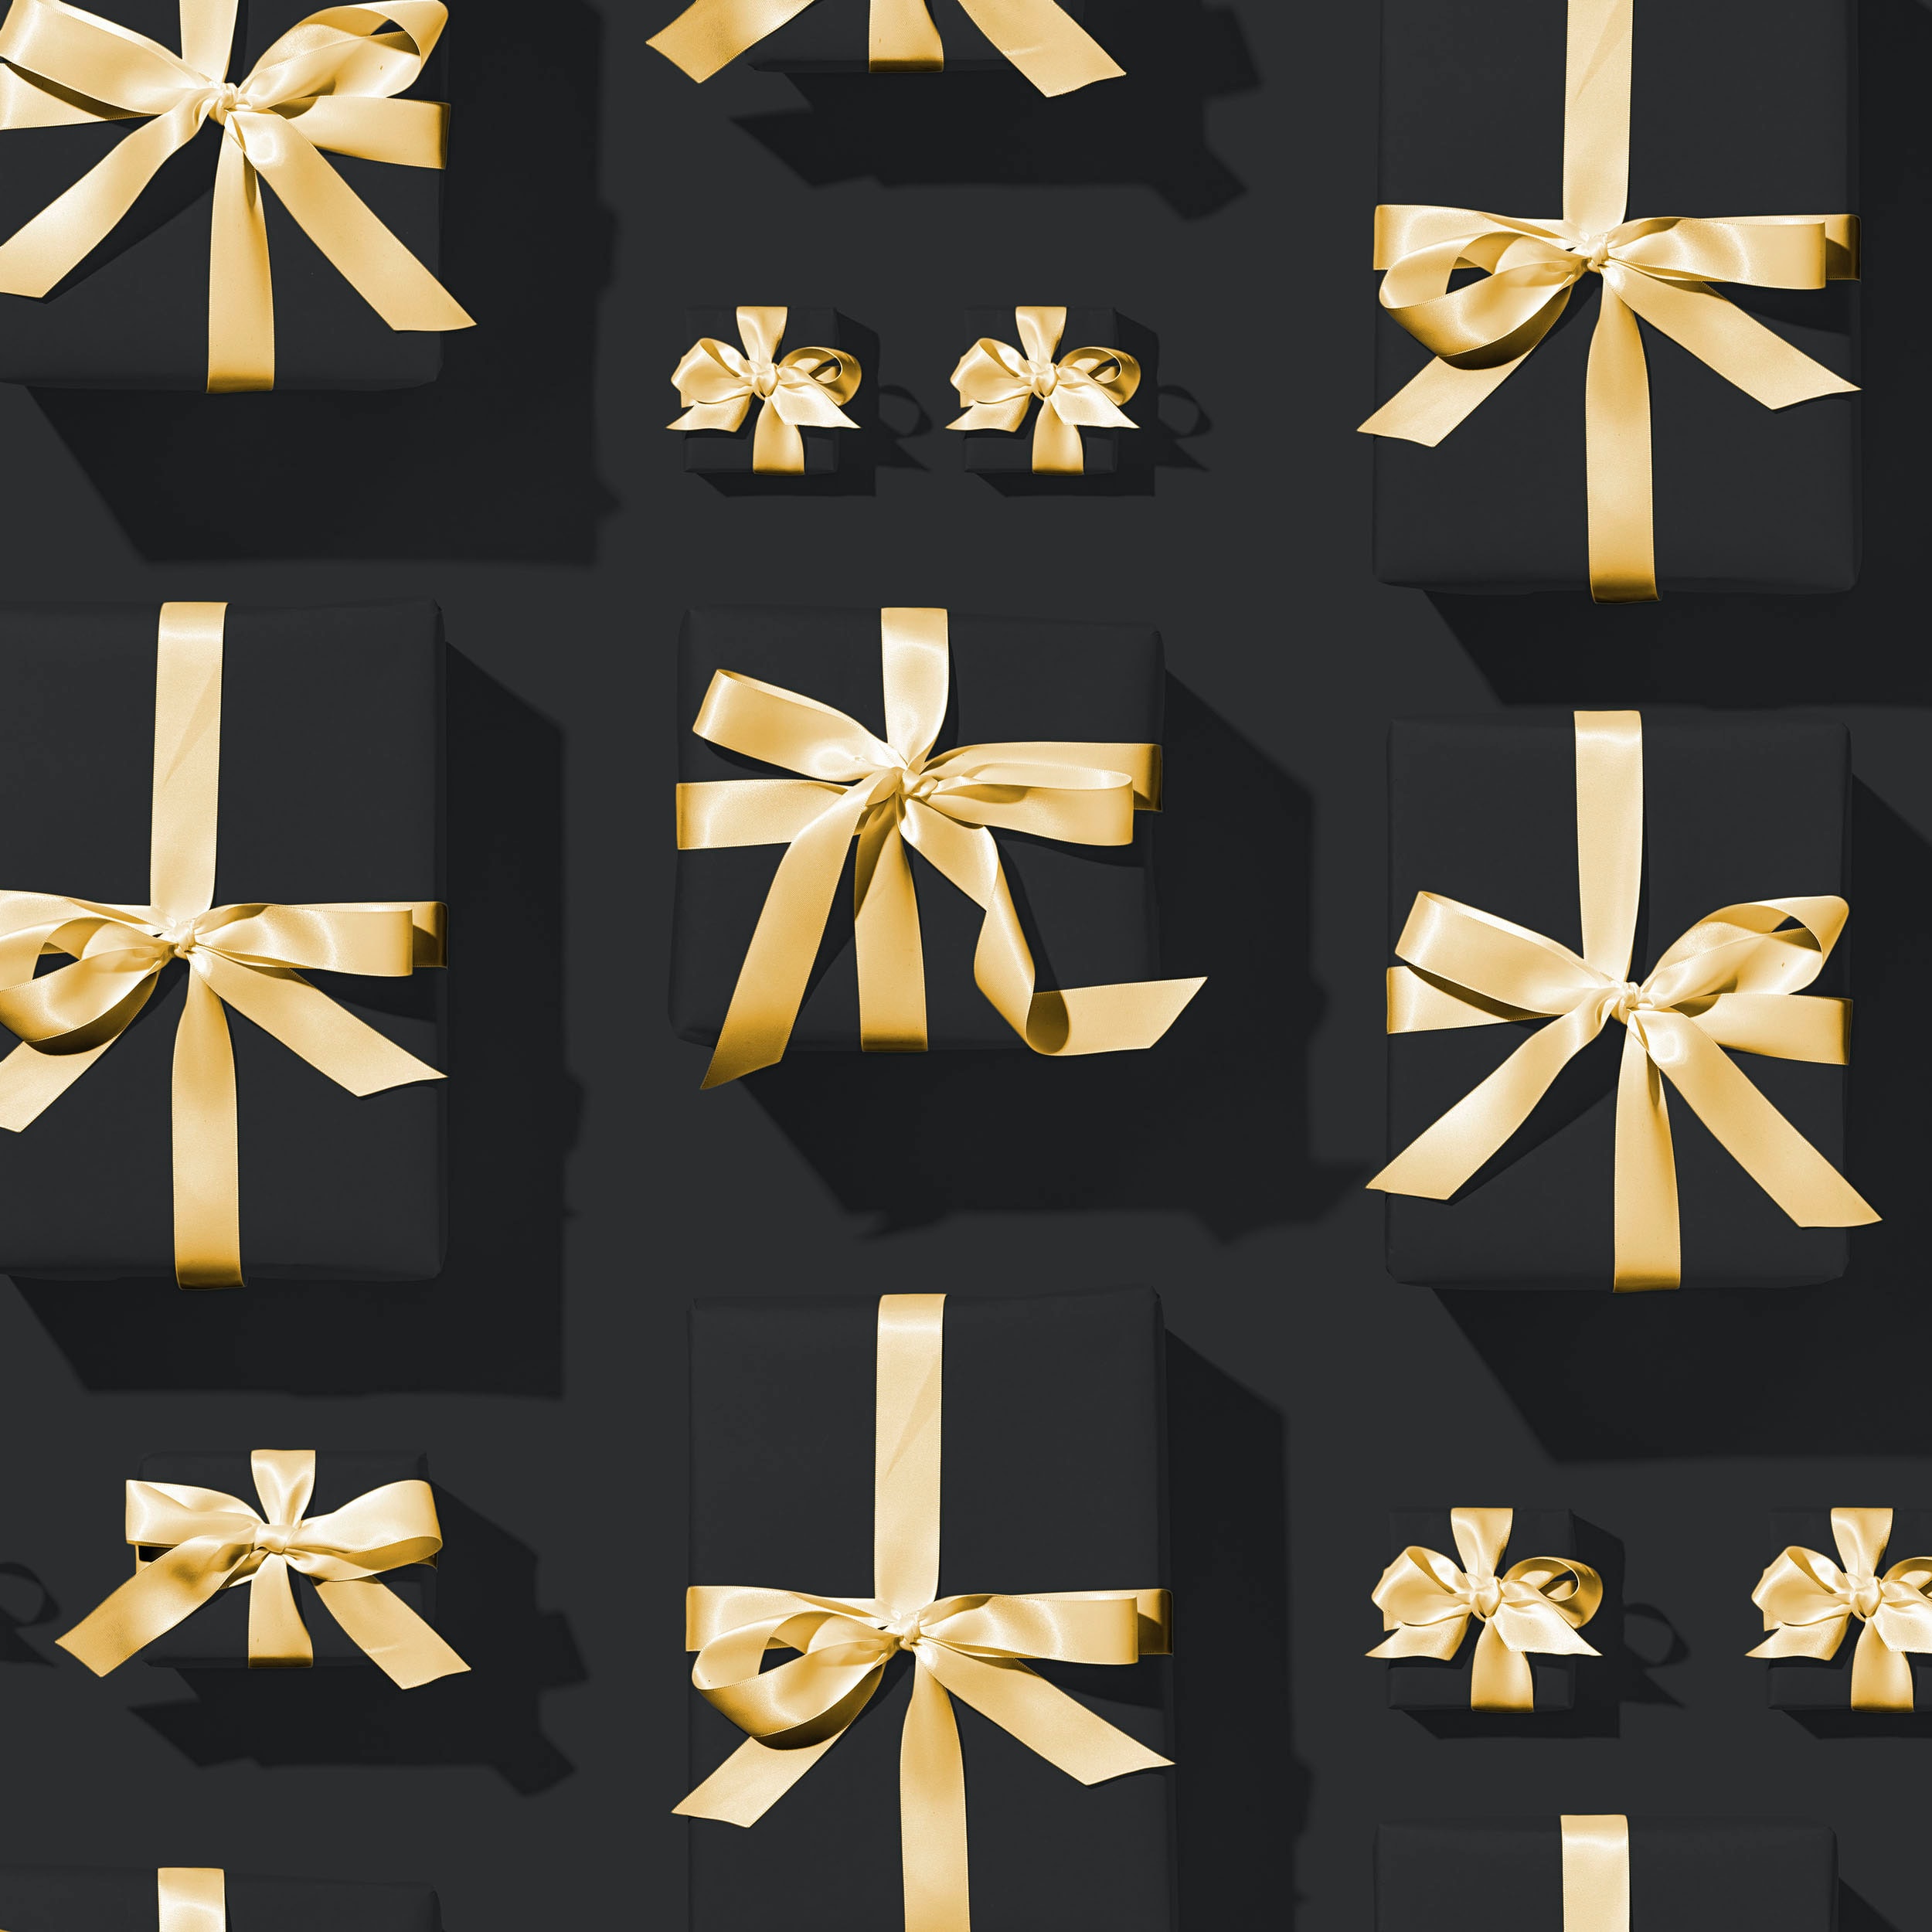 Ultra HD 4K ribbons, presents, holidays, boxes